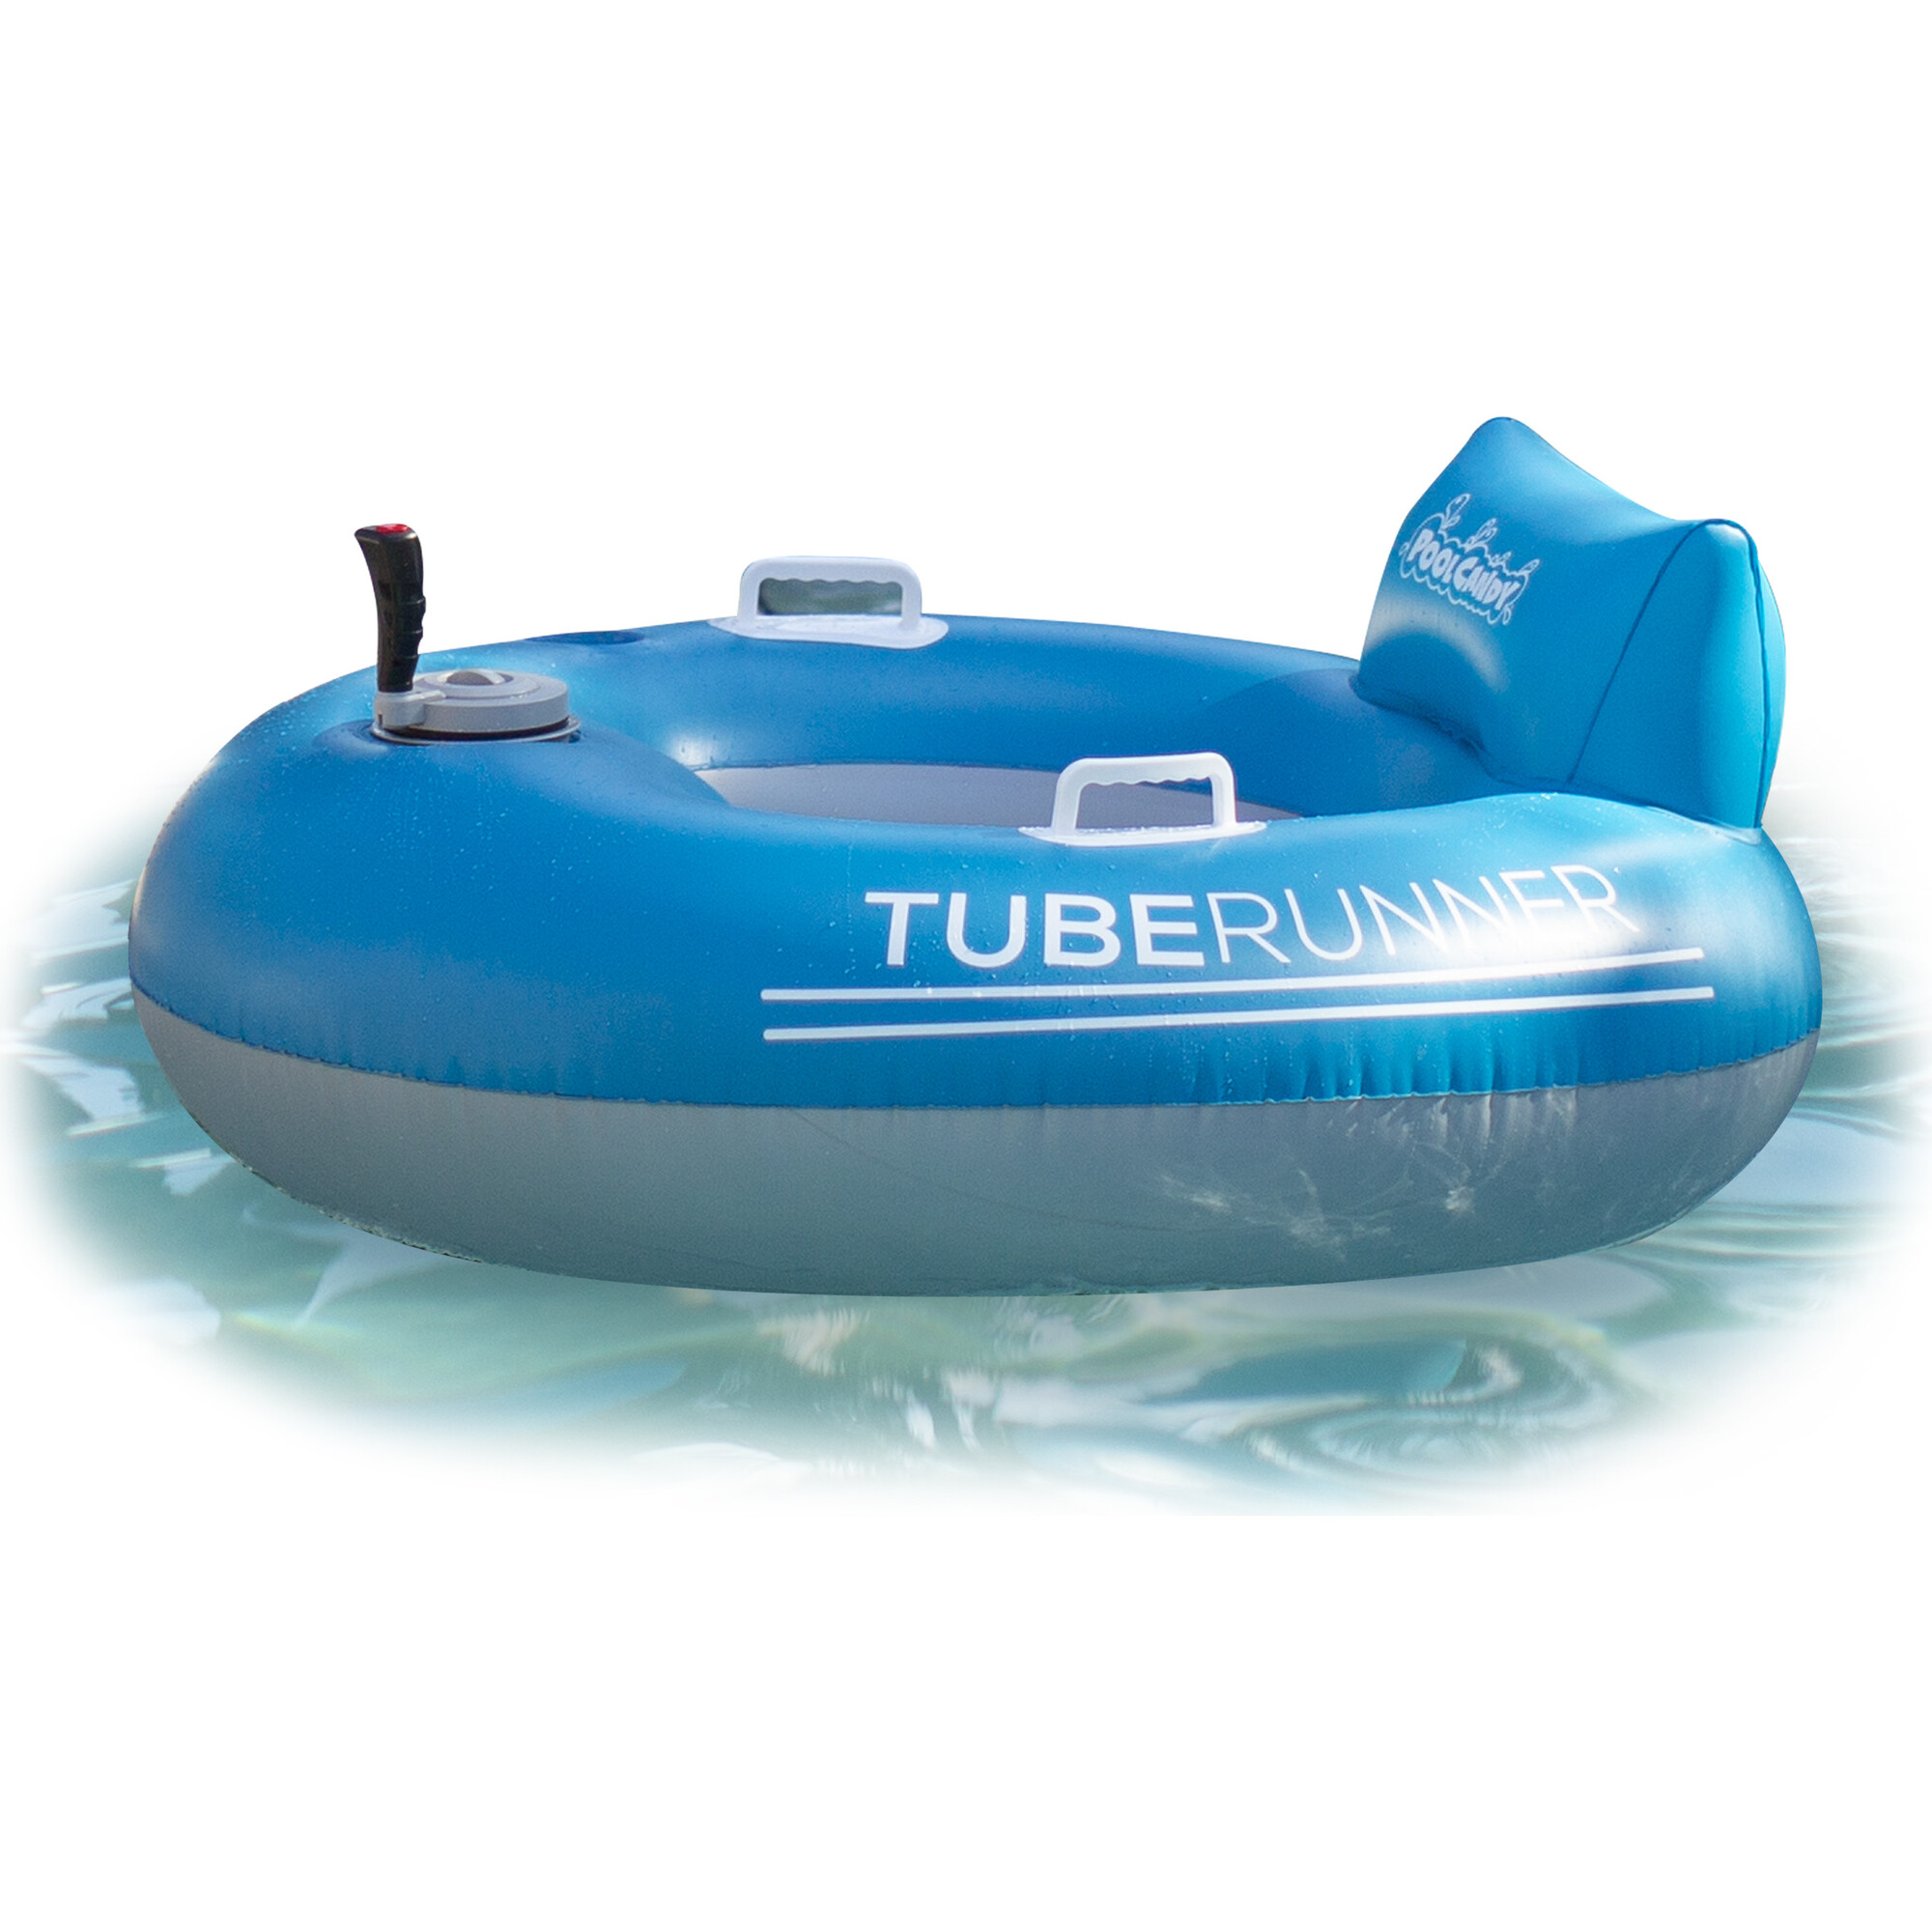 Tube Runner Motorized Pool Tube - PoolCandy Water Play | Maisonette